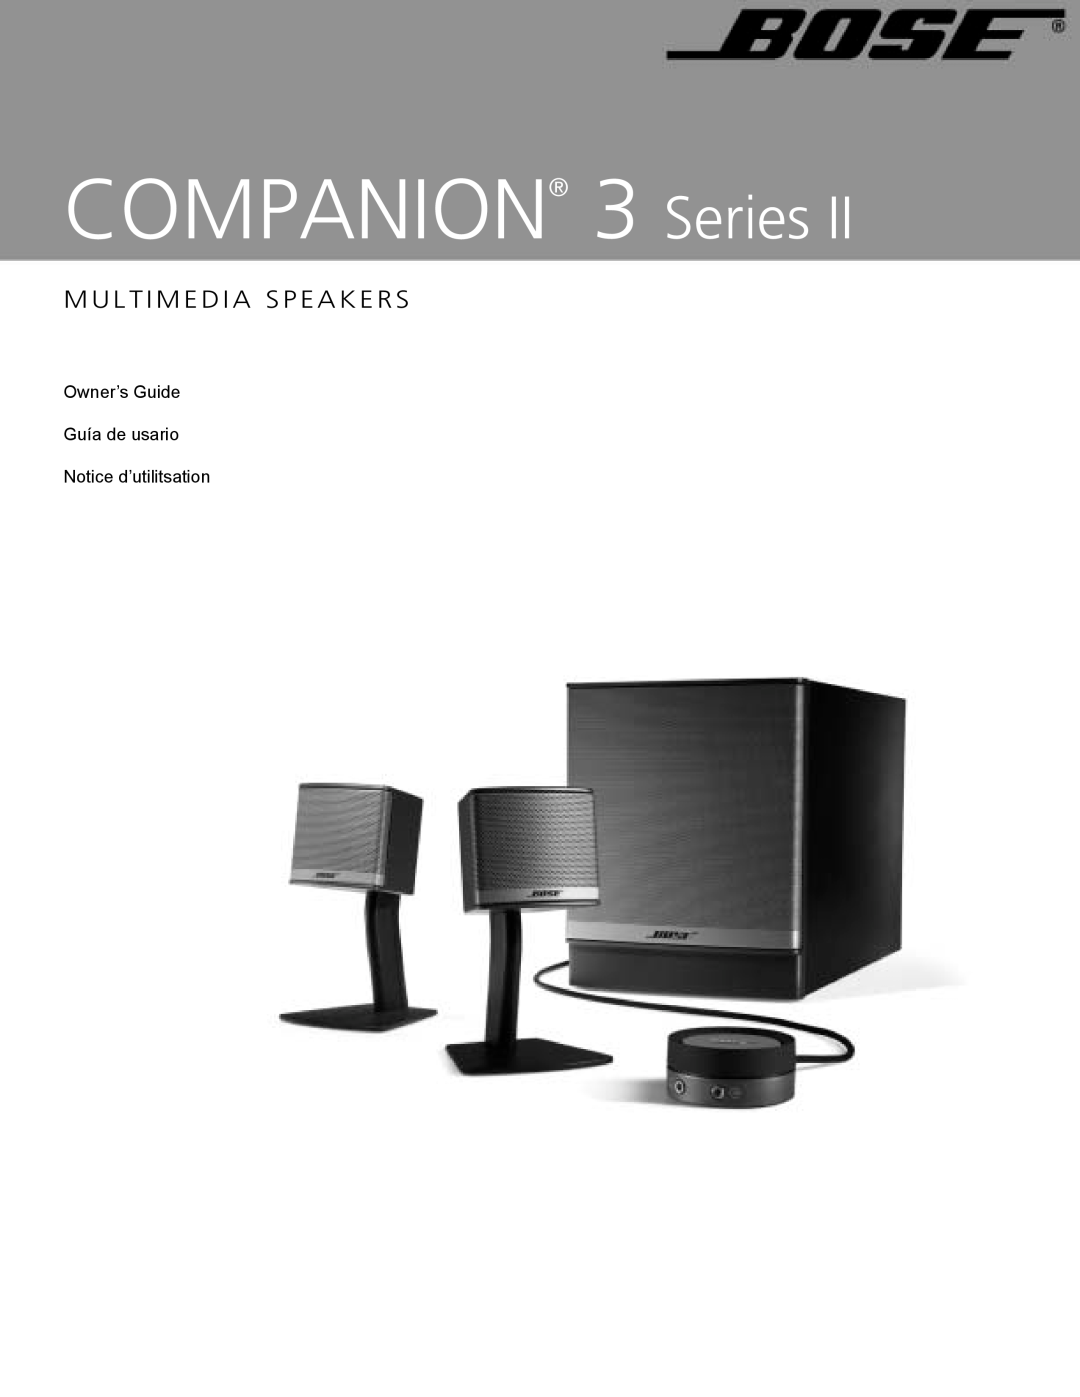 Bose manual COMPANION 3 Series, M U L T I M E D I A S P E A K E R S 